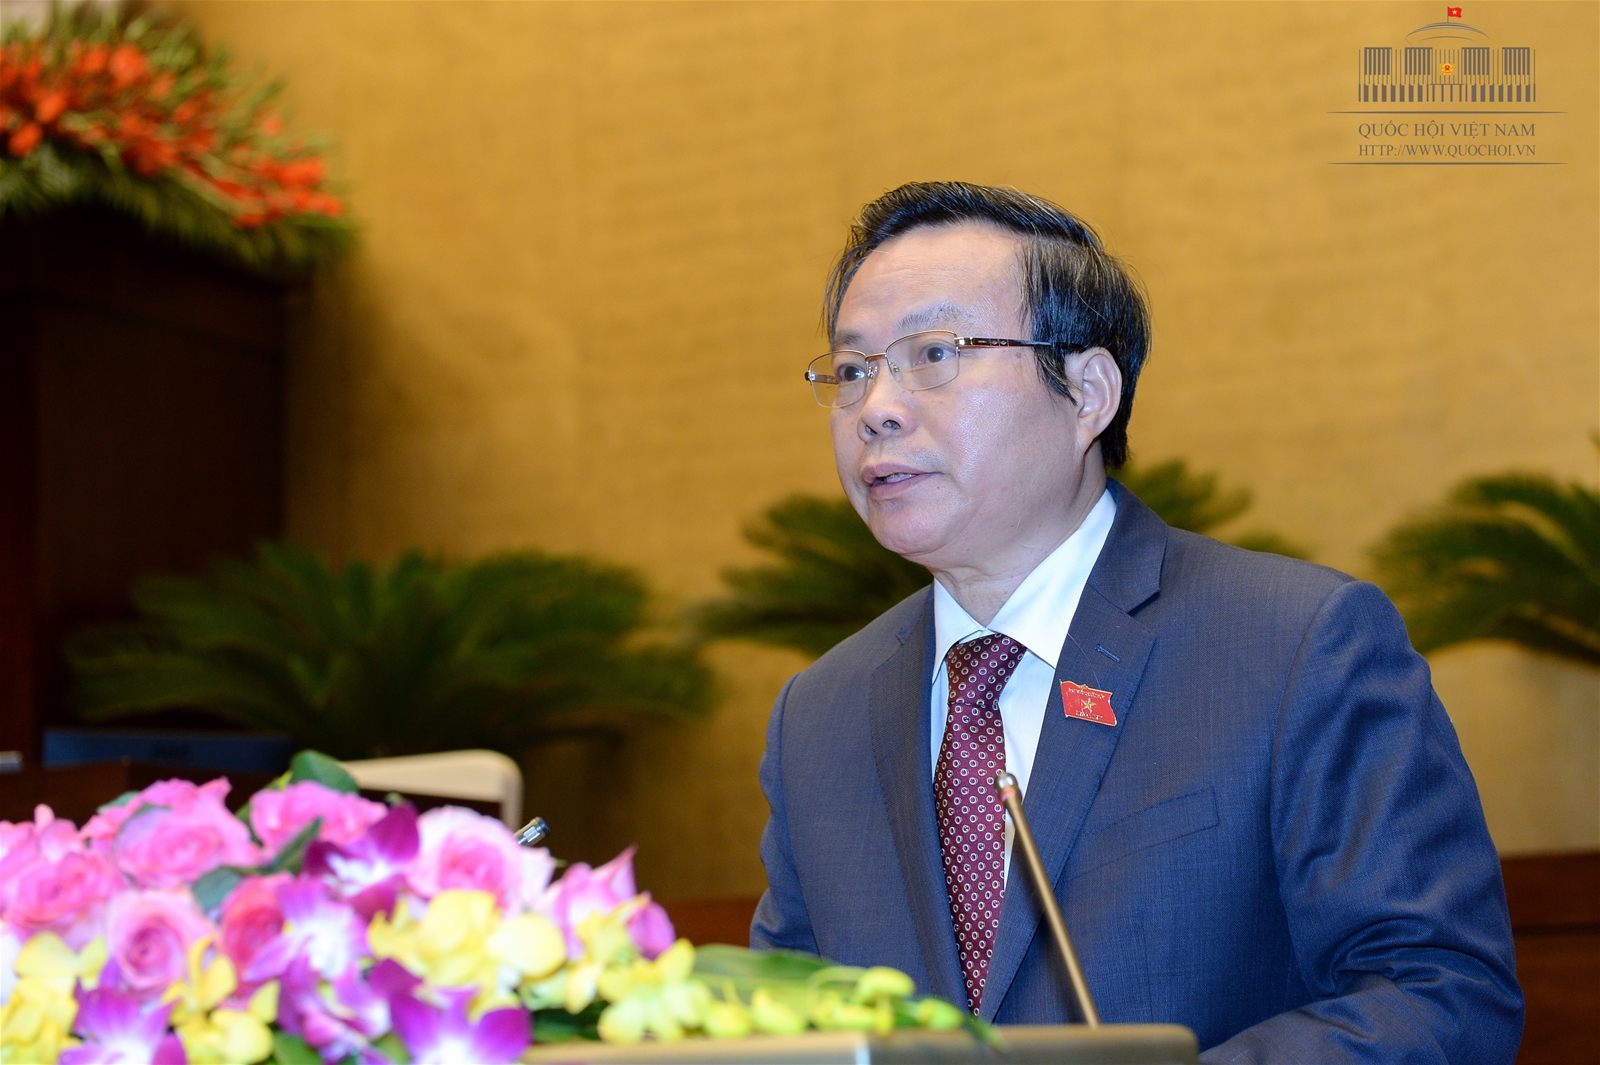 Cơ hội mới để Kiểm toán Nhà nước Việt Nam hợp tác, phát triển